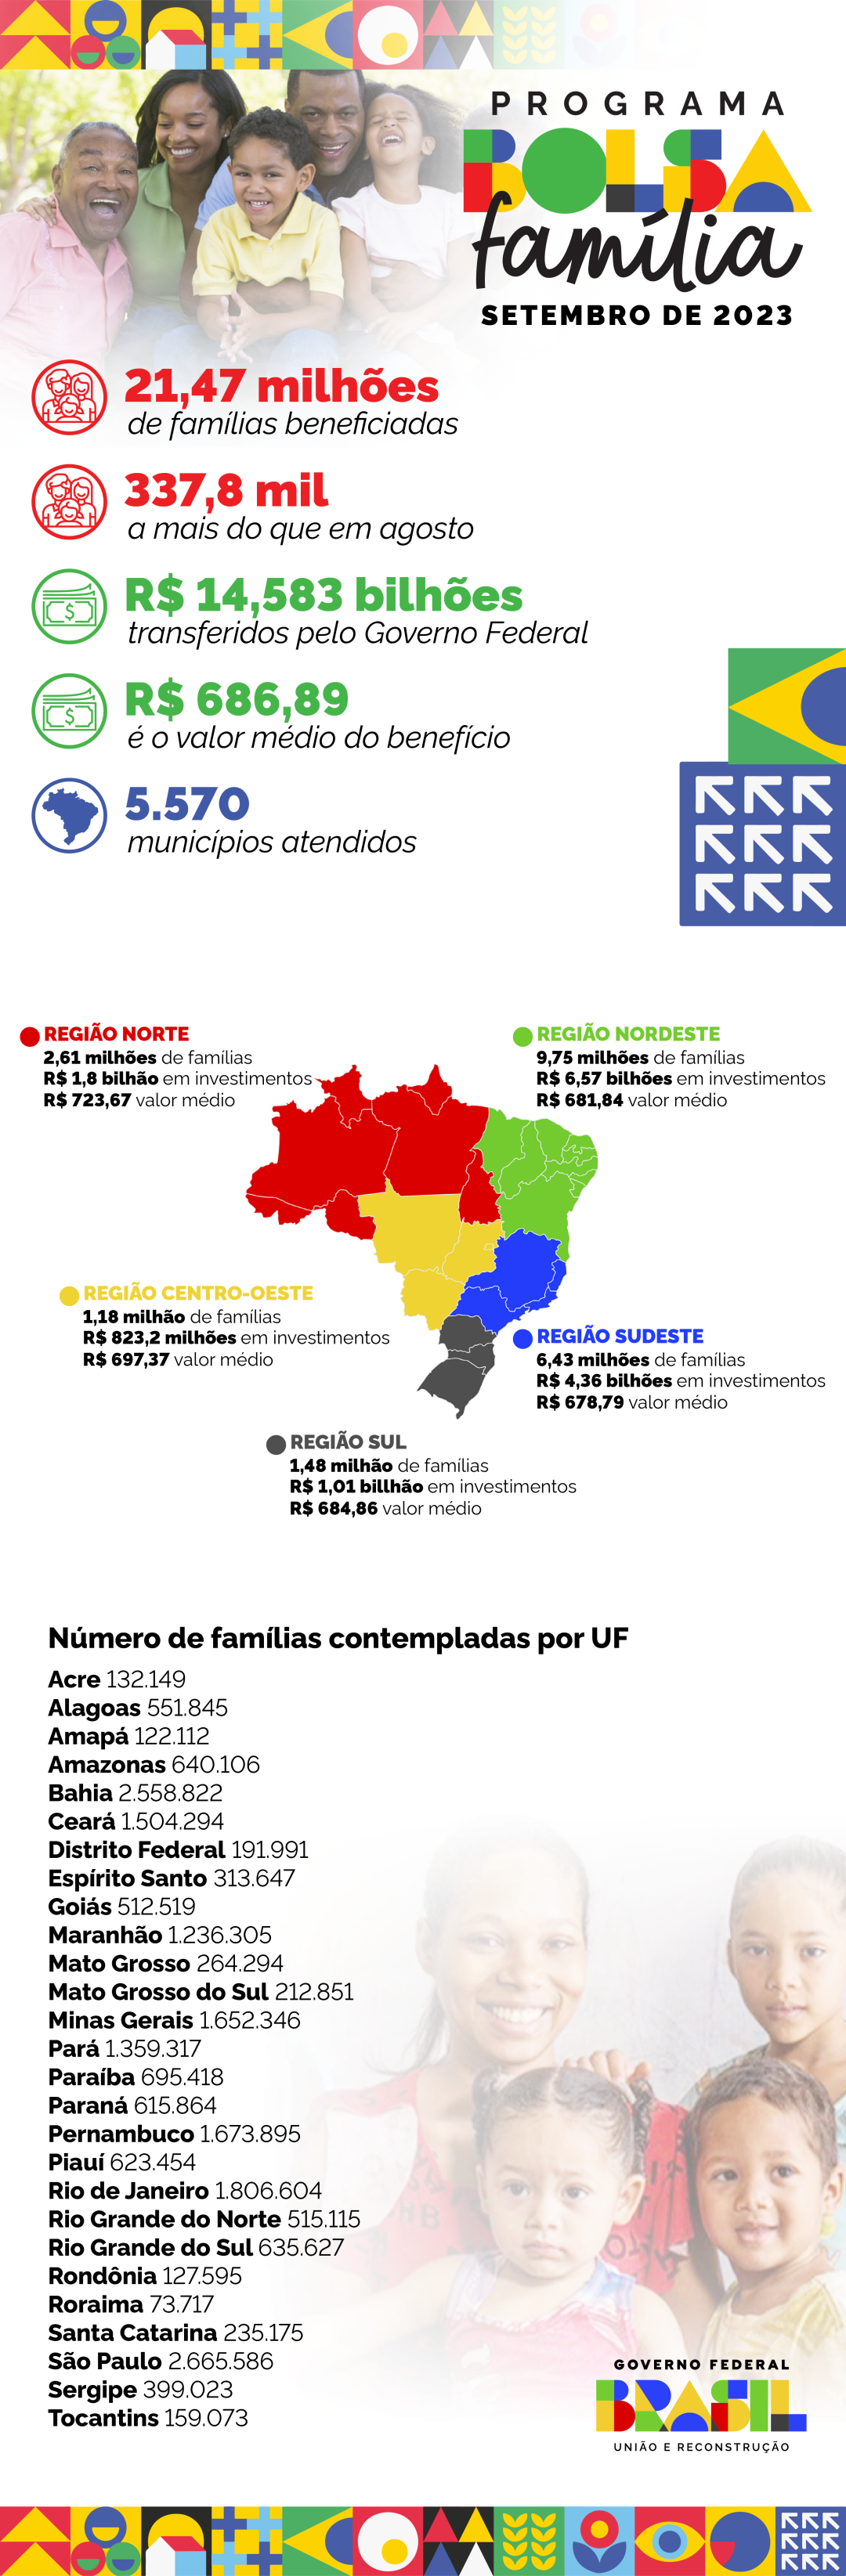 Distribuição de pagamentos do programa Bolsa Família por região e UF, no mês de setembro de 2023